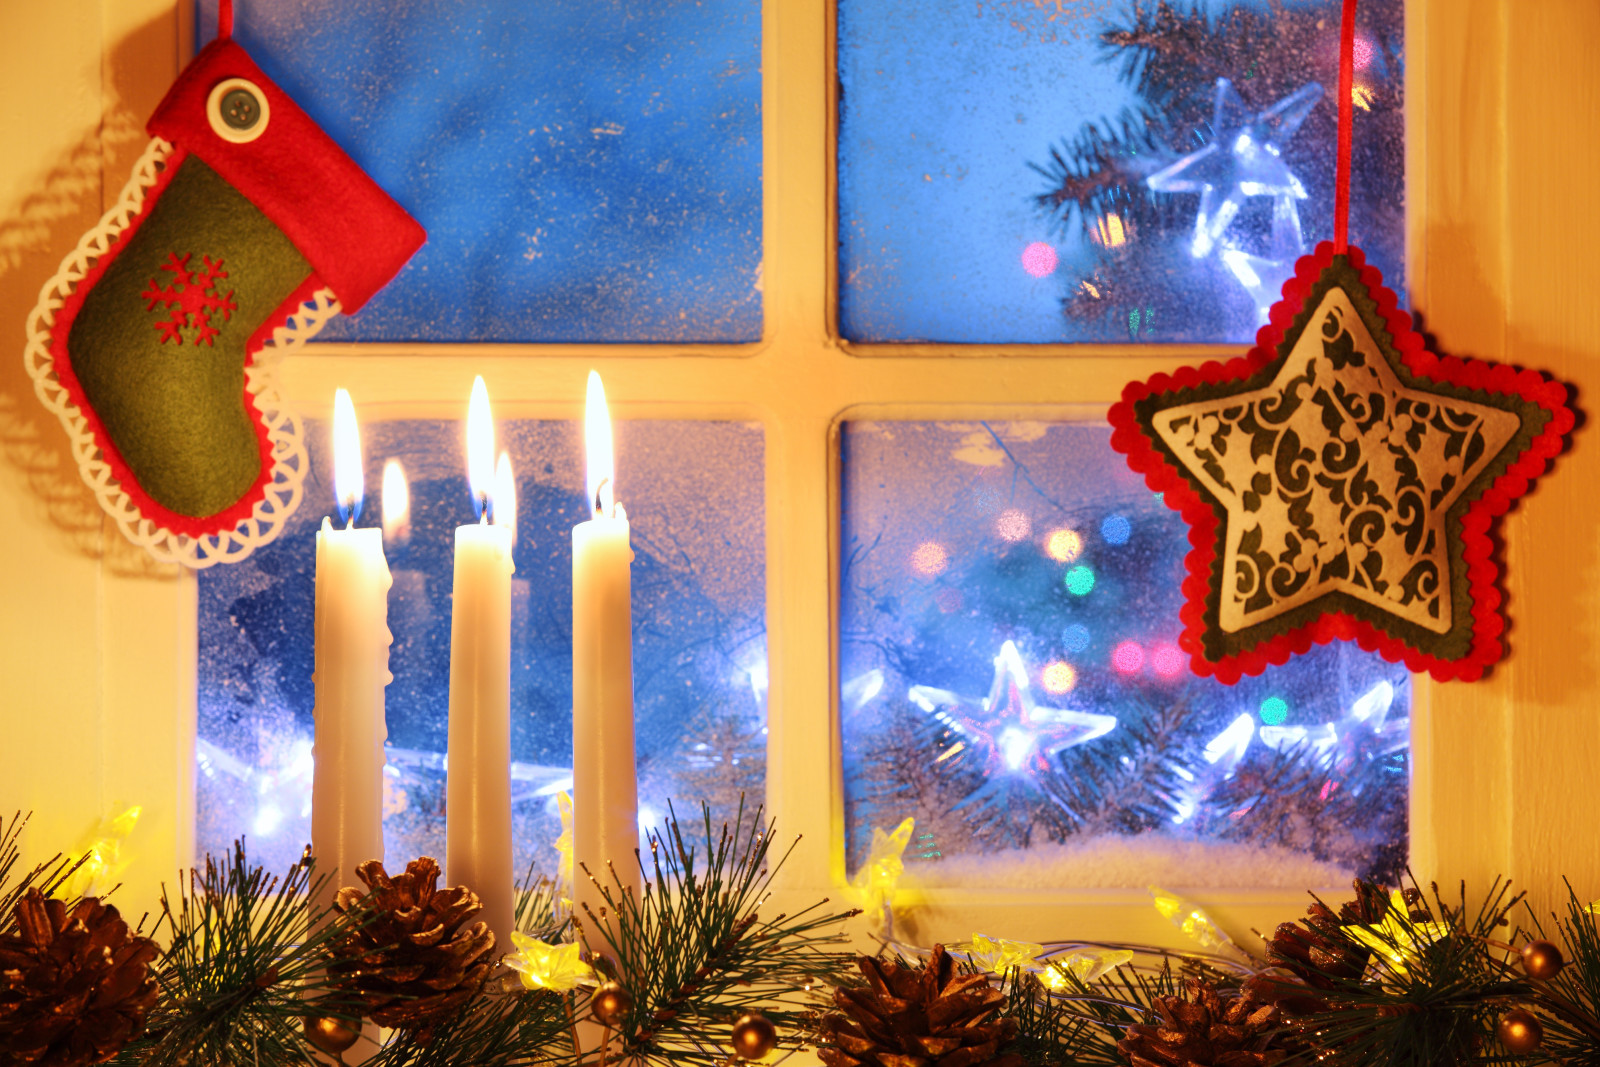 雪, 新年, 圣诞, 装饰, 快活的, 光, 冬季, 圣诞节